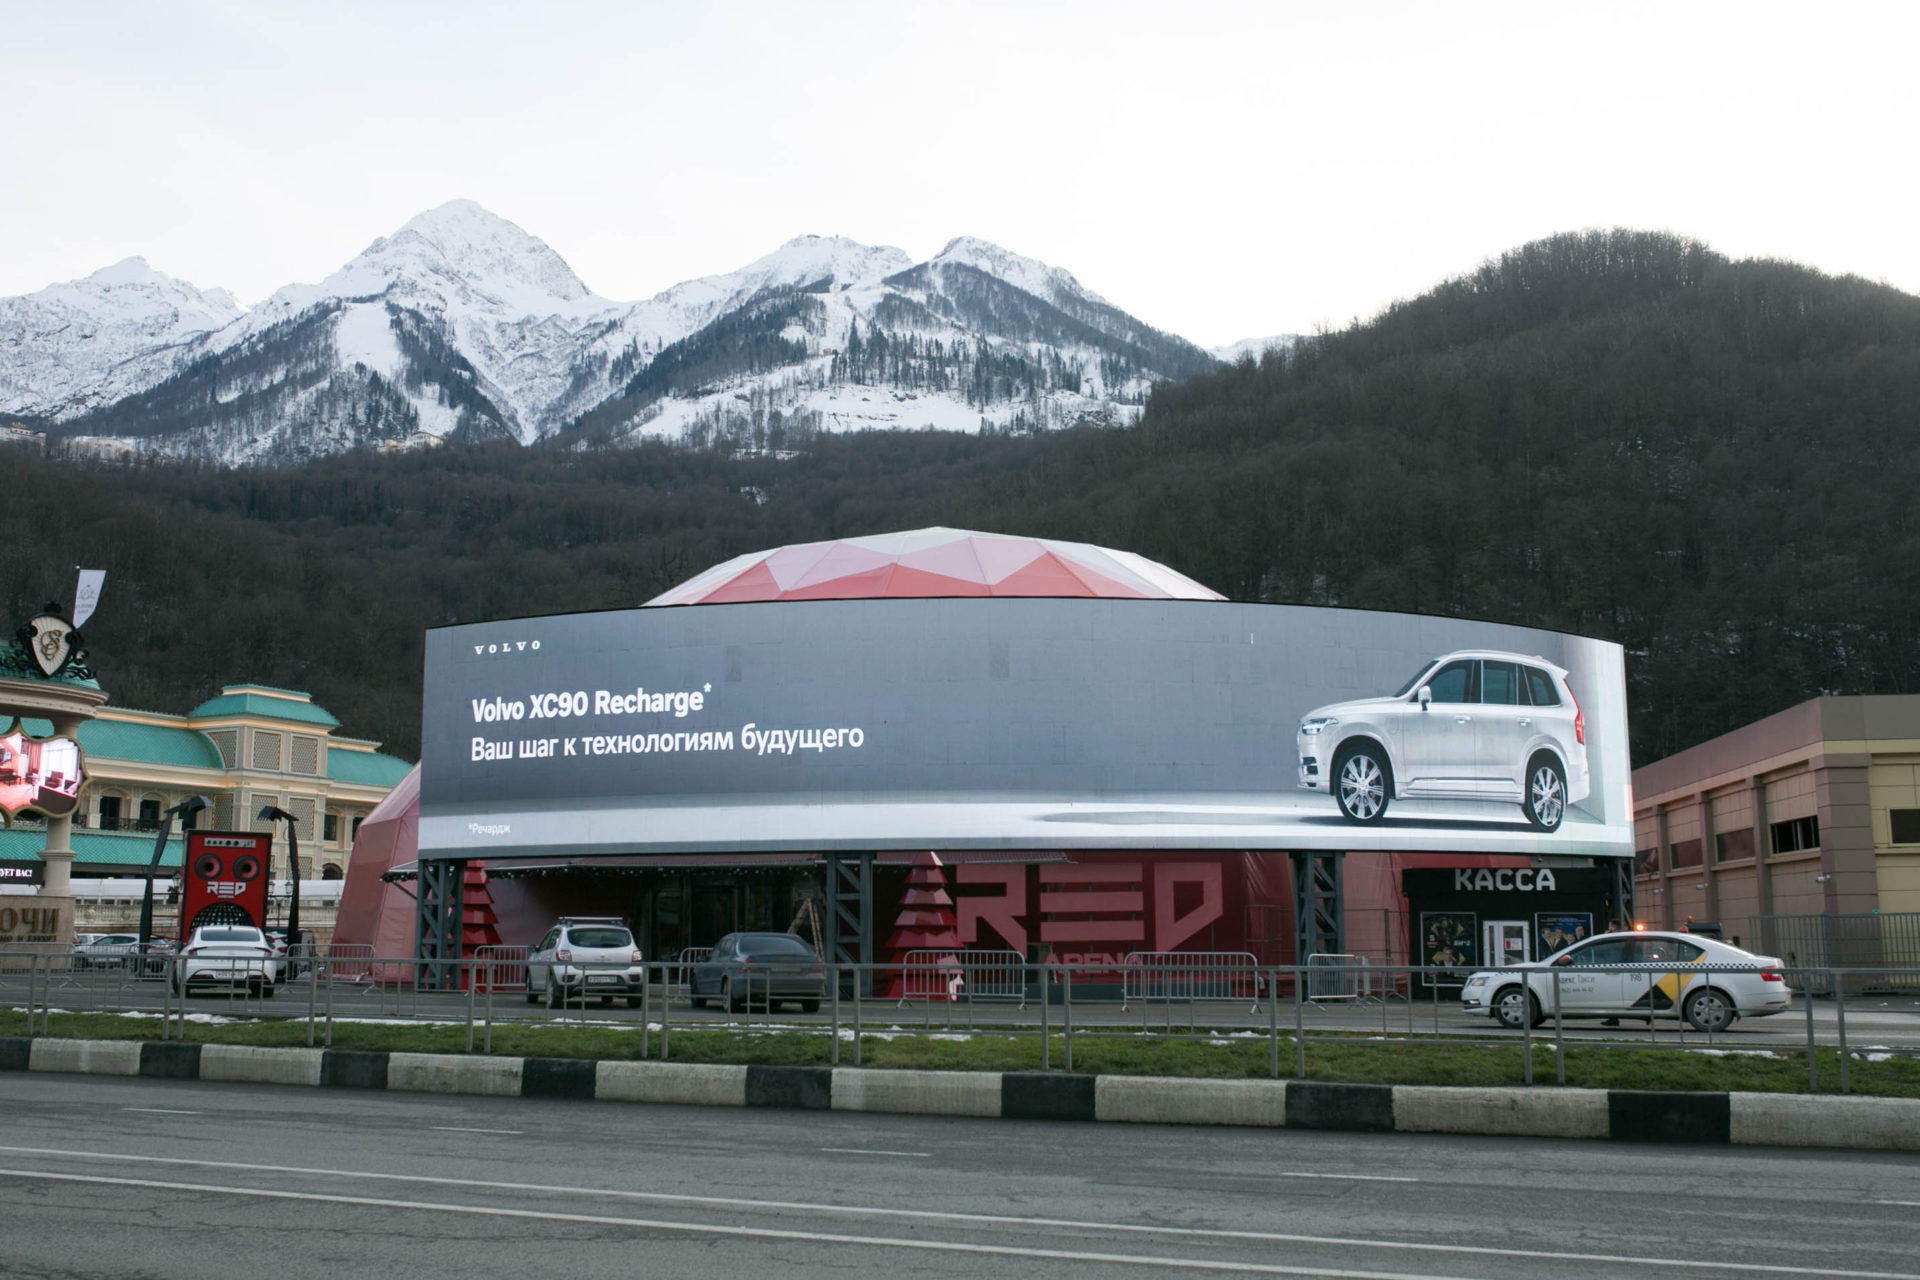 реклама Volvo на медиафасаде RED ARENA 